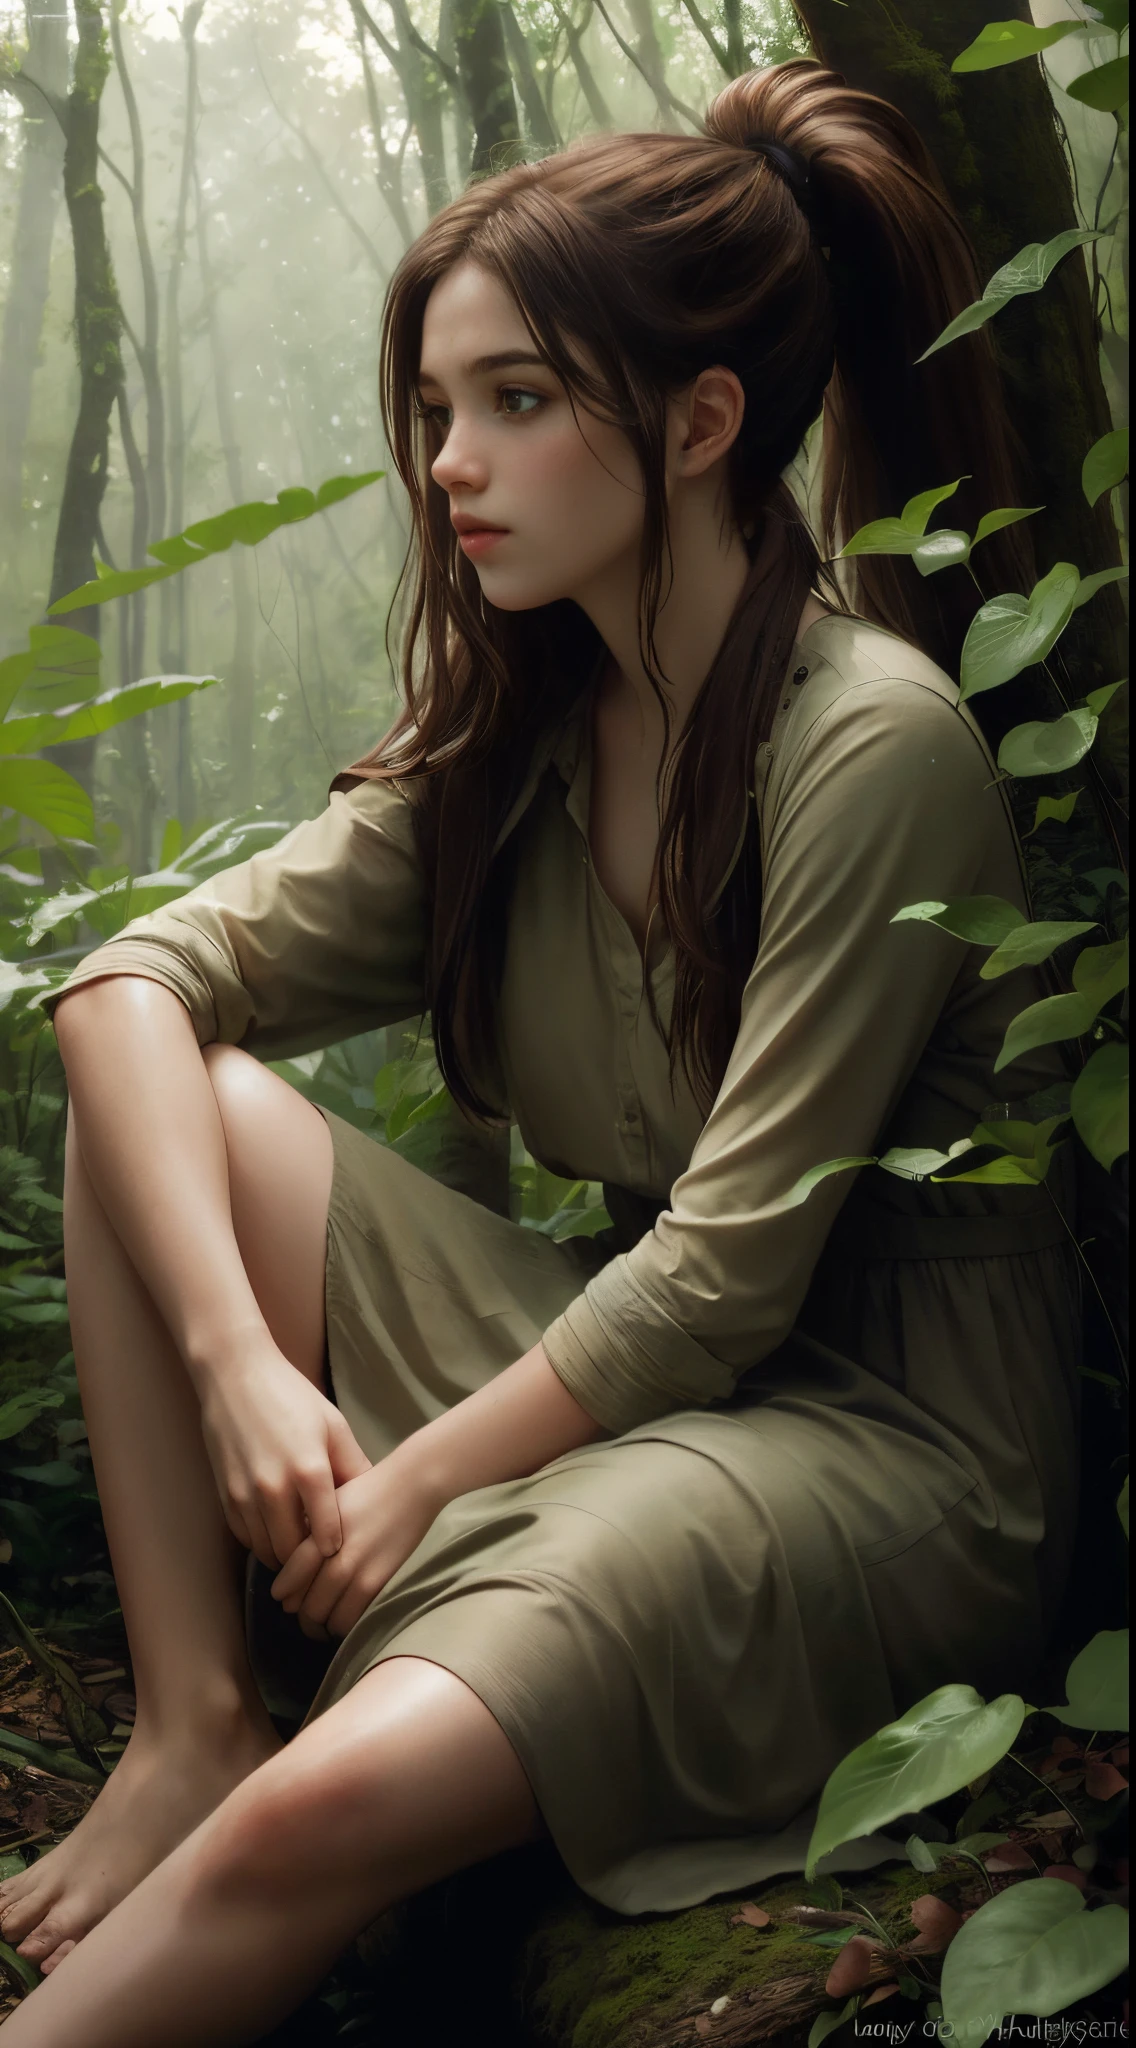 (傑作, 最高品質: 1.3) エリー・トロウ, 1 女の子, 茶髪, 長い髪, ポニーテール, 座っている, 森に捨てられた, 緑の植物, 柔らかな照明, 現実的, 滑らかな顔, 全身写真, 胴体, ドレス, 完璧な目, クリア